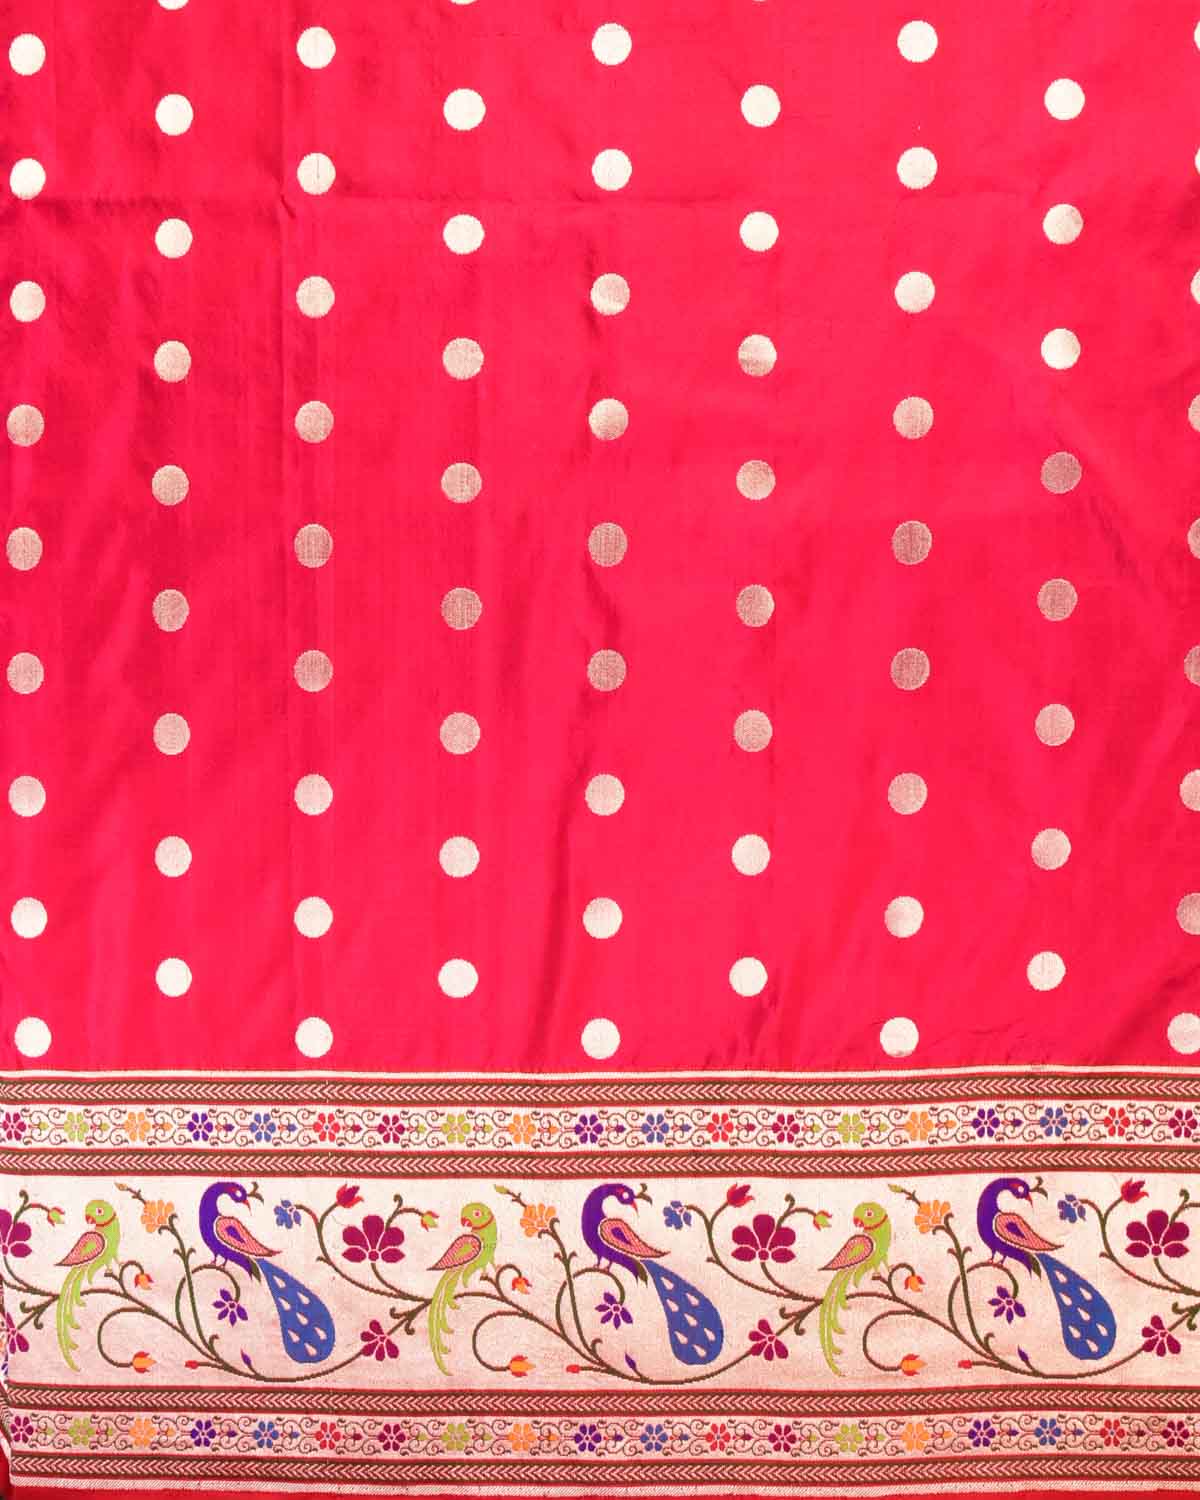 Shot Pink-Red Banarasi Gold Zari Meena Parrot & Peacock Paithani Cutwork Brocade Handwoven Katan Silk Saree - By HolyWeaves, Benares